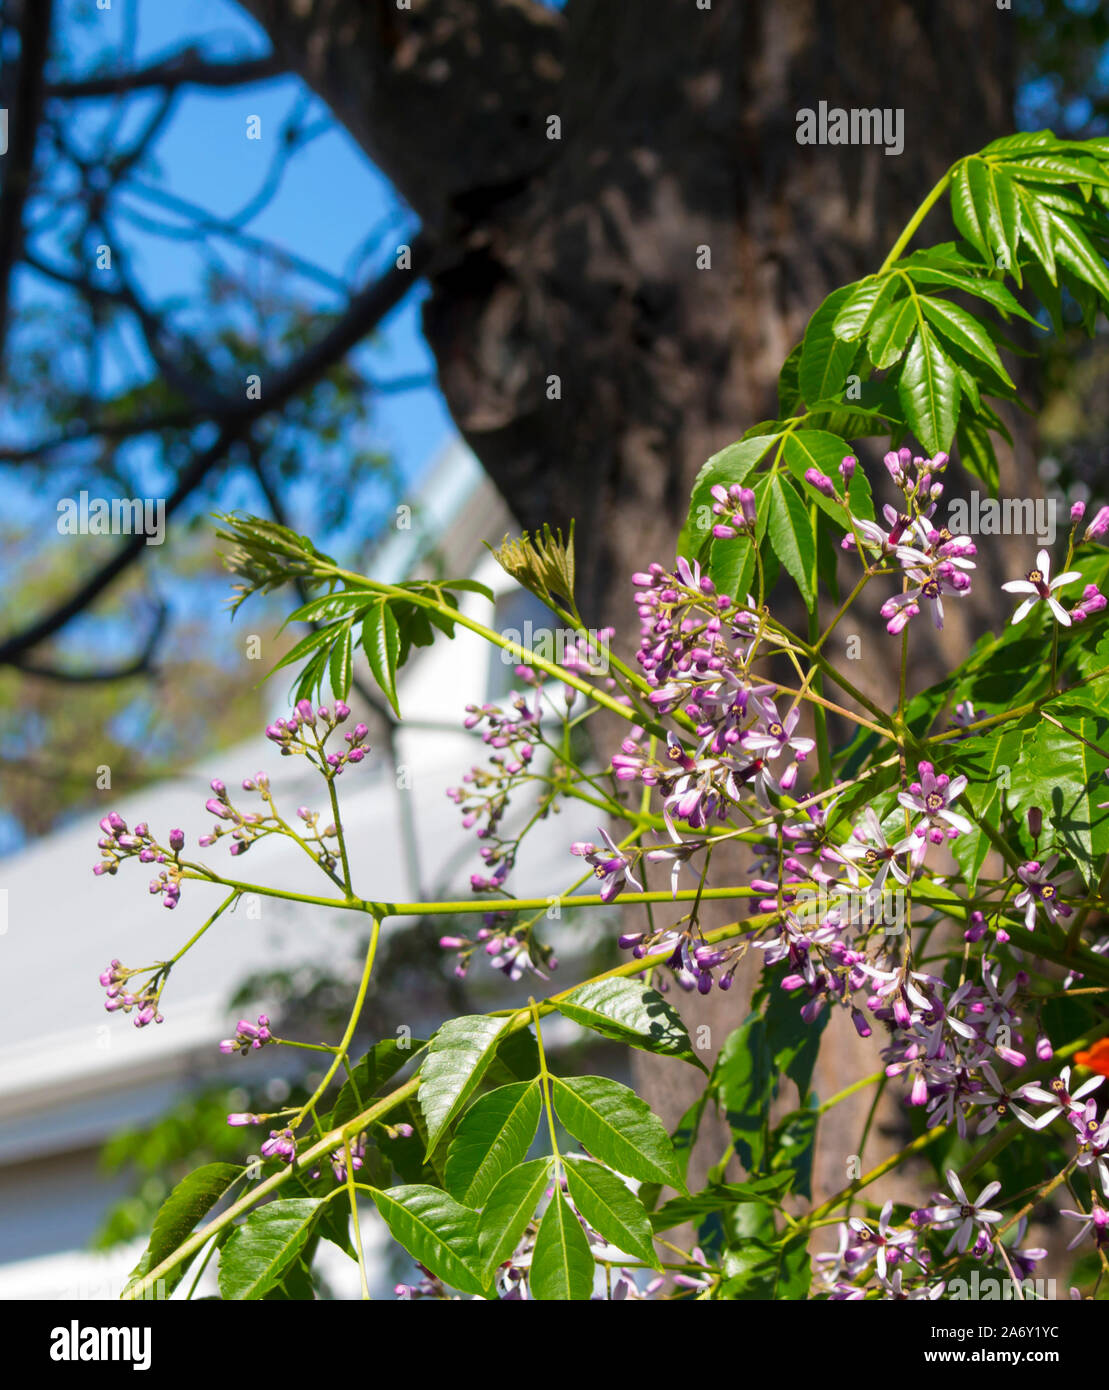 Hübsche Blumen von White Cedar wissenschaftlicher Name Melia azedarach als persischer Flieder, Sonnenschirm und Chinaberry tree bekannt fügen Farbe und dekorativen Interesse. Stockfoto